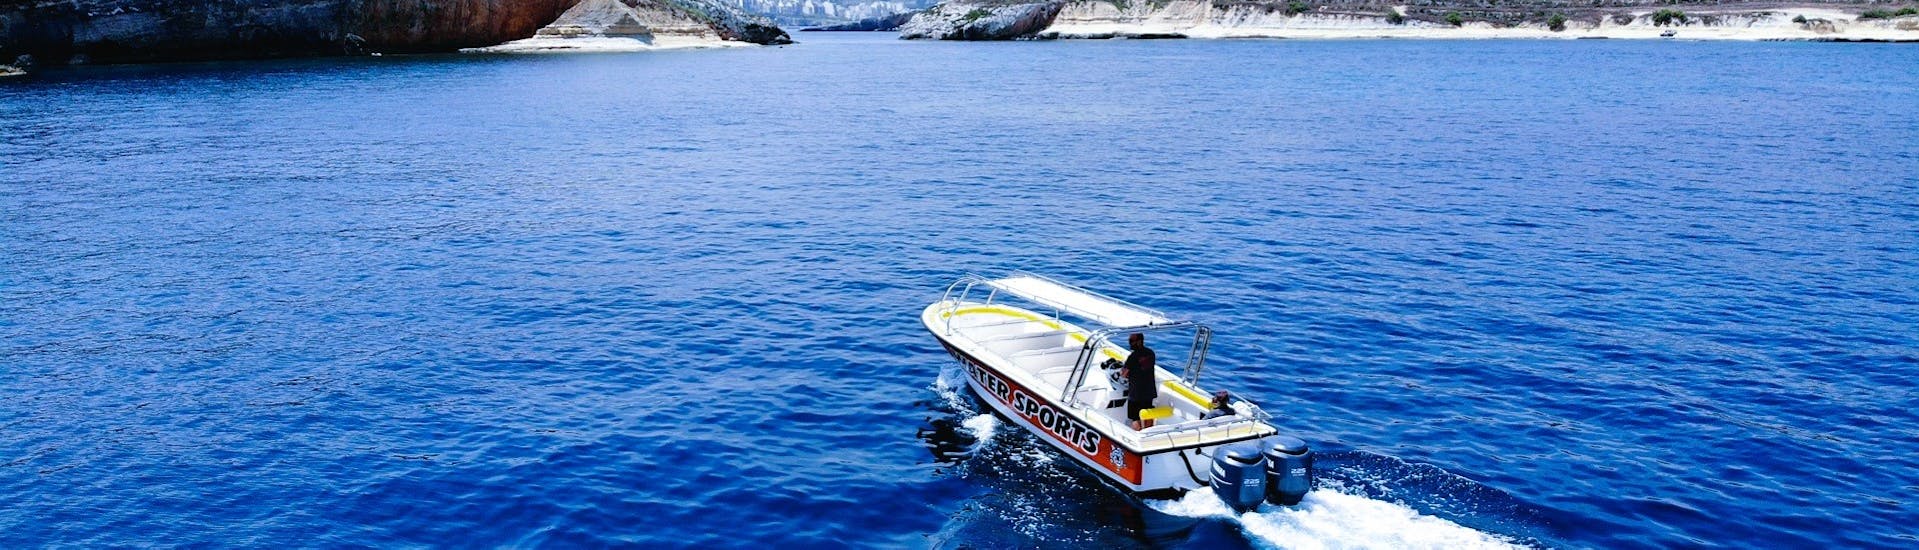 Boottocht naar Comino met zwemmen & toeristische attracties met Whyknot Cruises Malta.